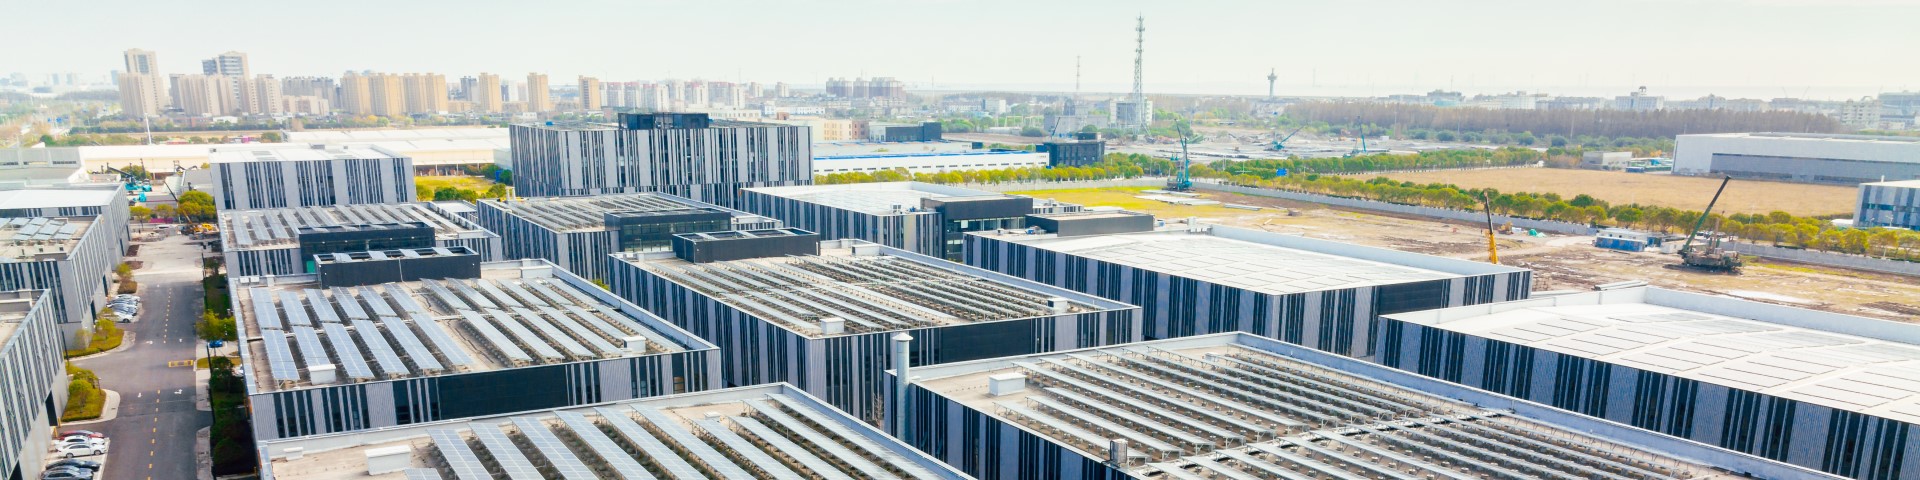 Luftaufnahme von Solarzellen auf dem Dach einer Fabrik